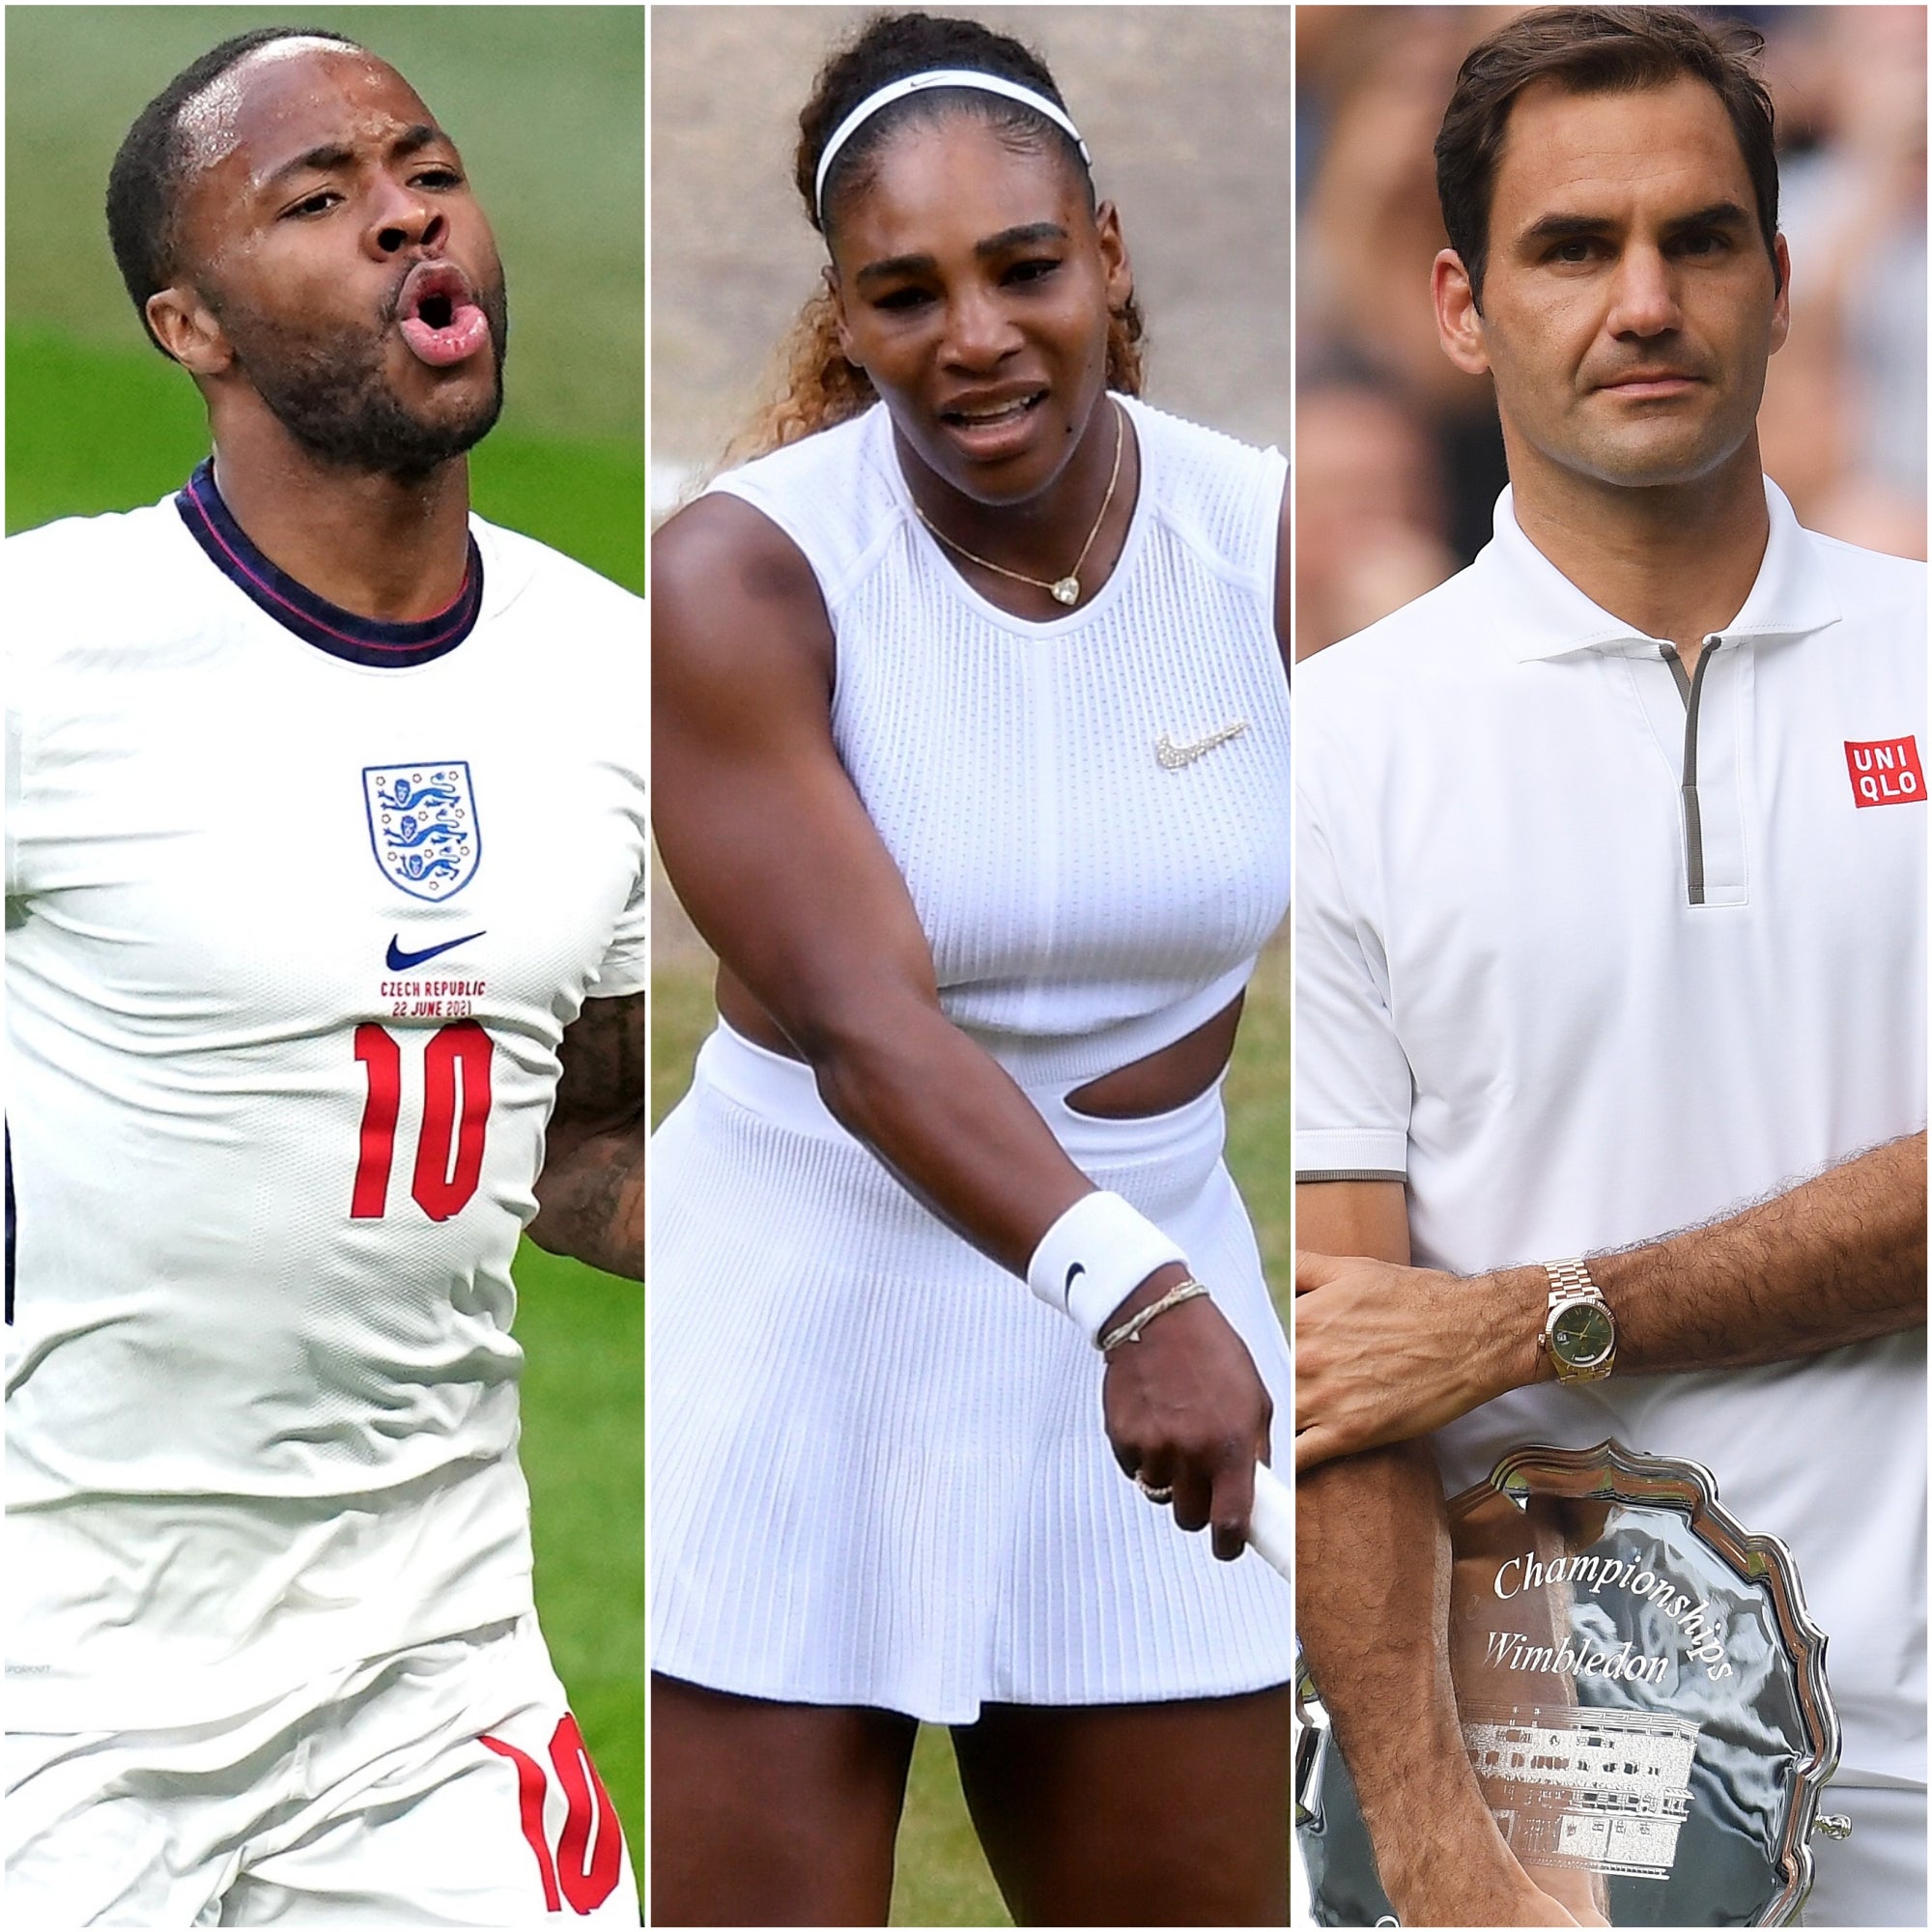 Raheem Sterling, Serena Williams and Roger Federer